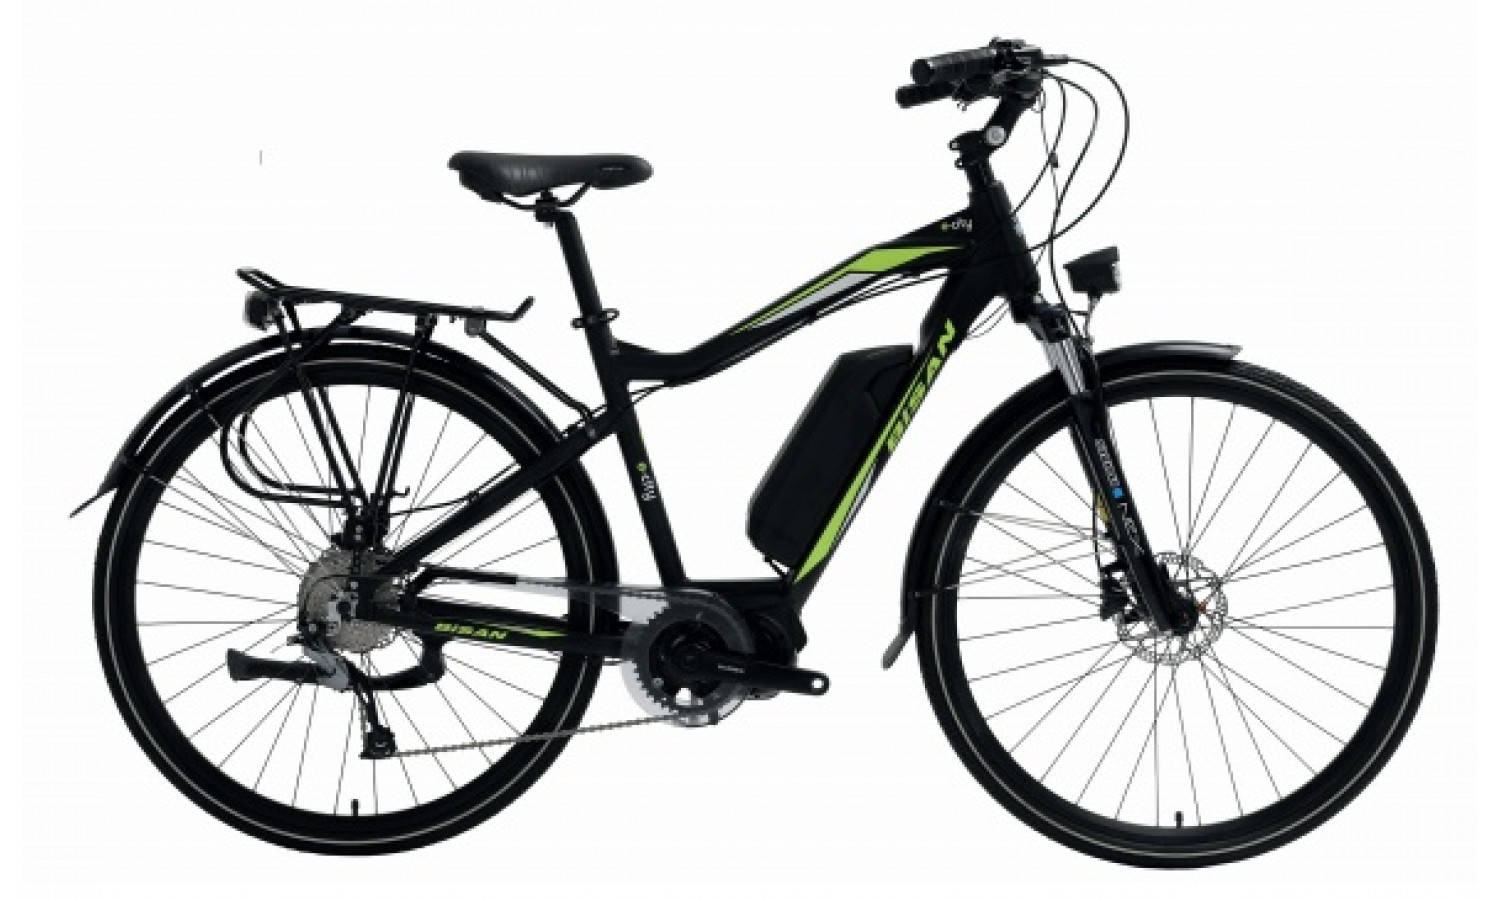 Bisan E-City 28 Jant Hd Elektrikli Bisiklet (Siyah Yeşil)